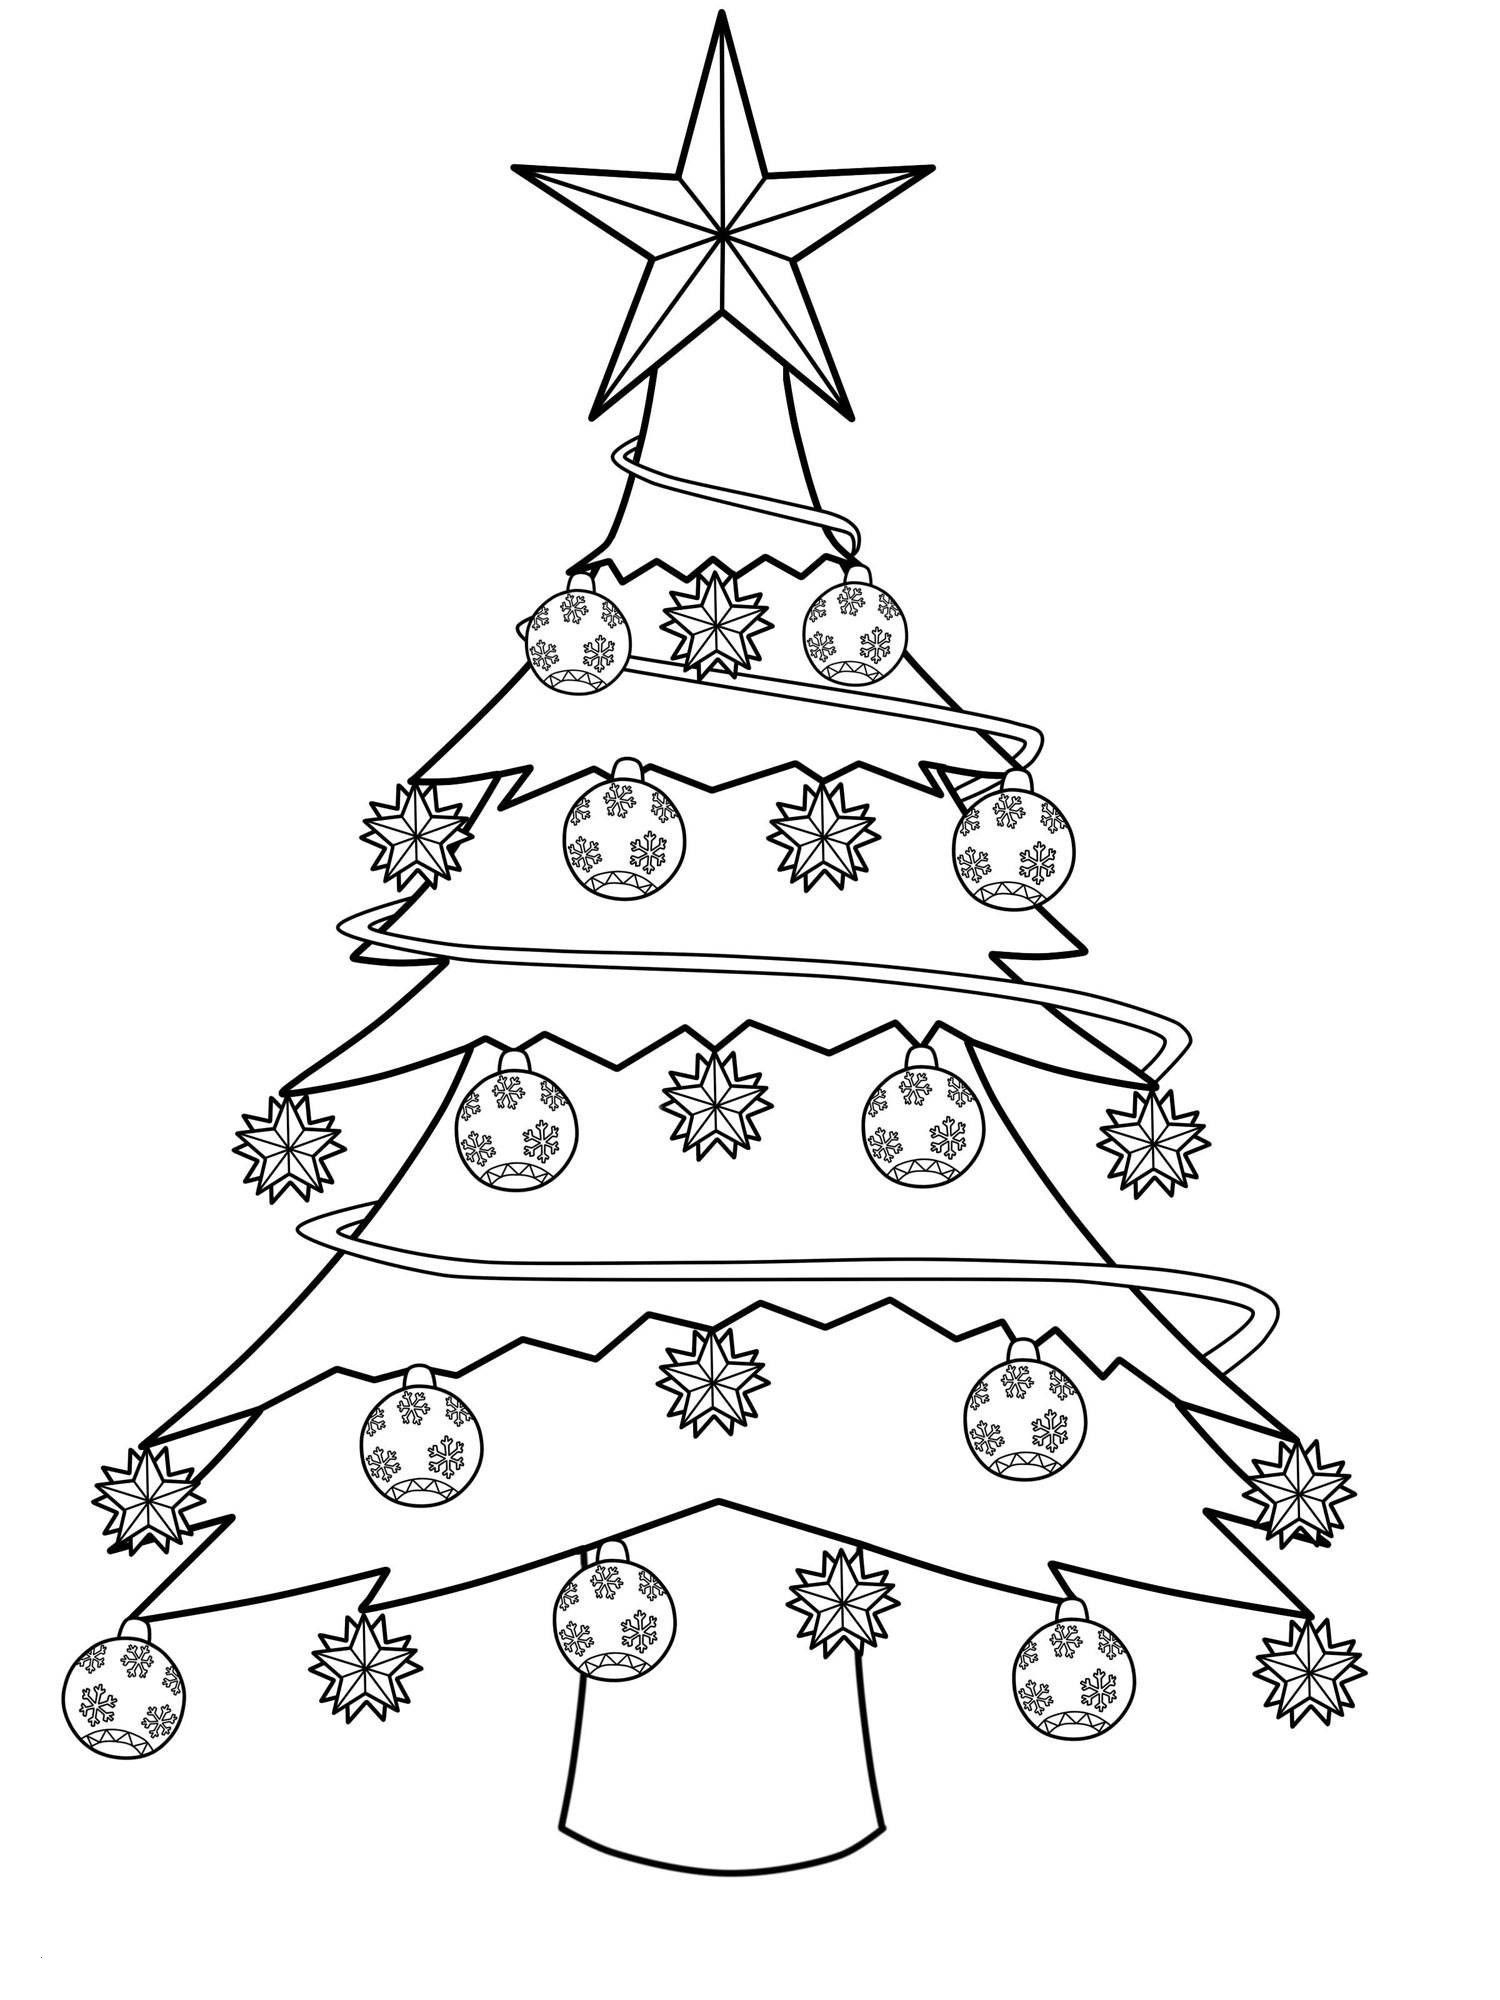 Frisch Schablone Tannenbaum | Color, Seasons bei Weihnachtsbaum Zum Ausmalen